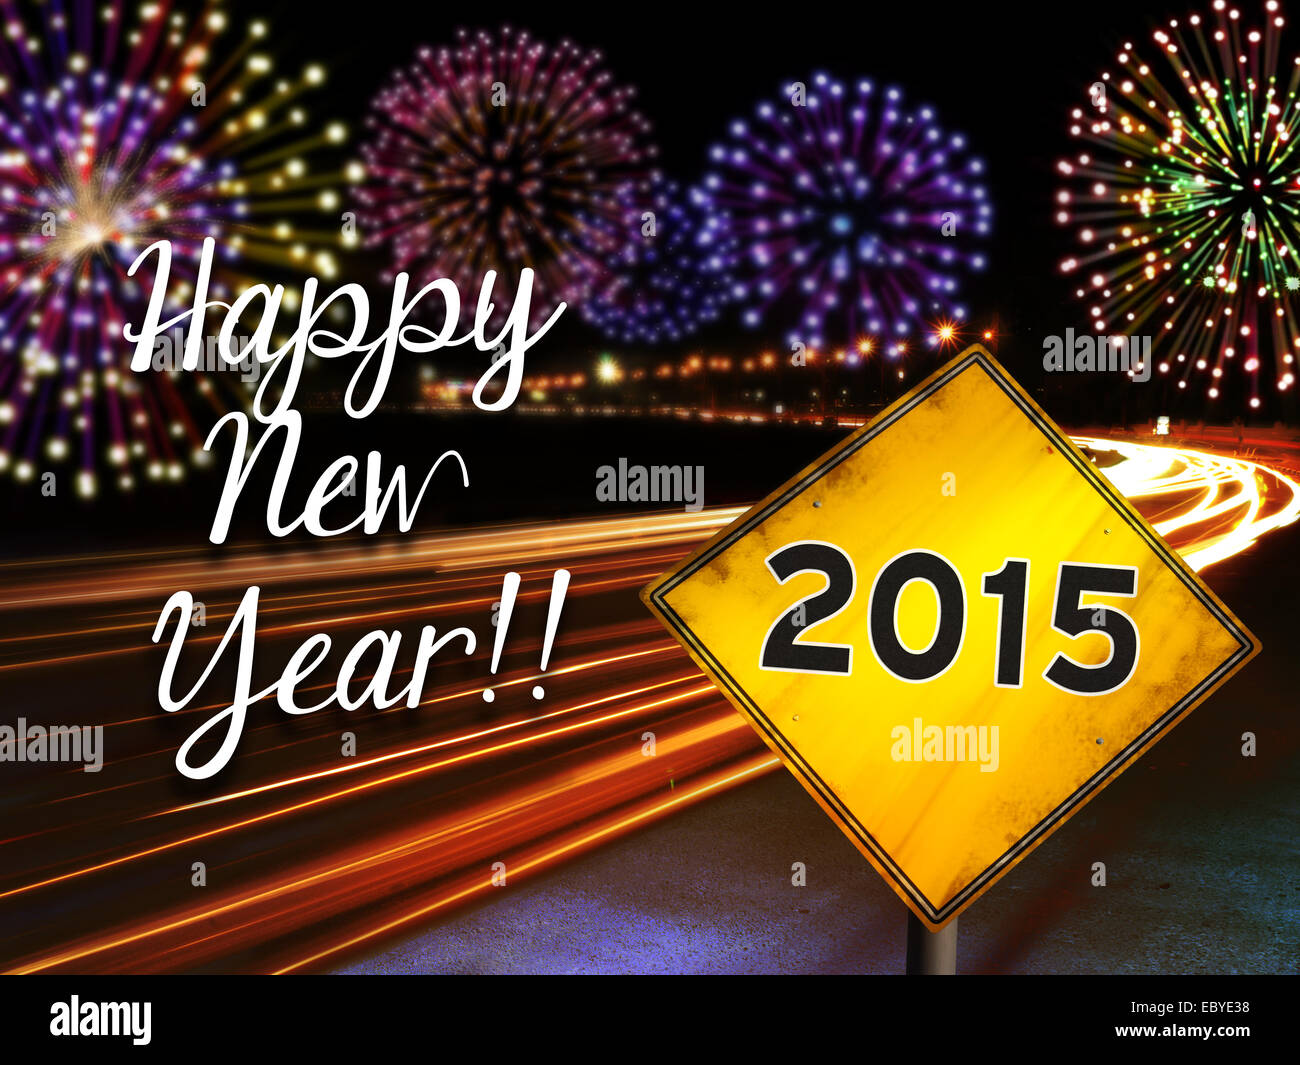 Bonne Année 2015 Fireworks et voitures de ville les feux de route avec du jaune panneau routier. Contexte de conception de carte de vœux. Banque D'Images